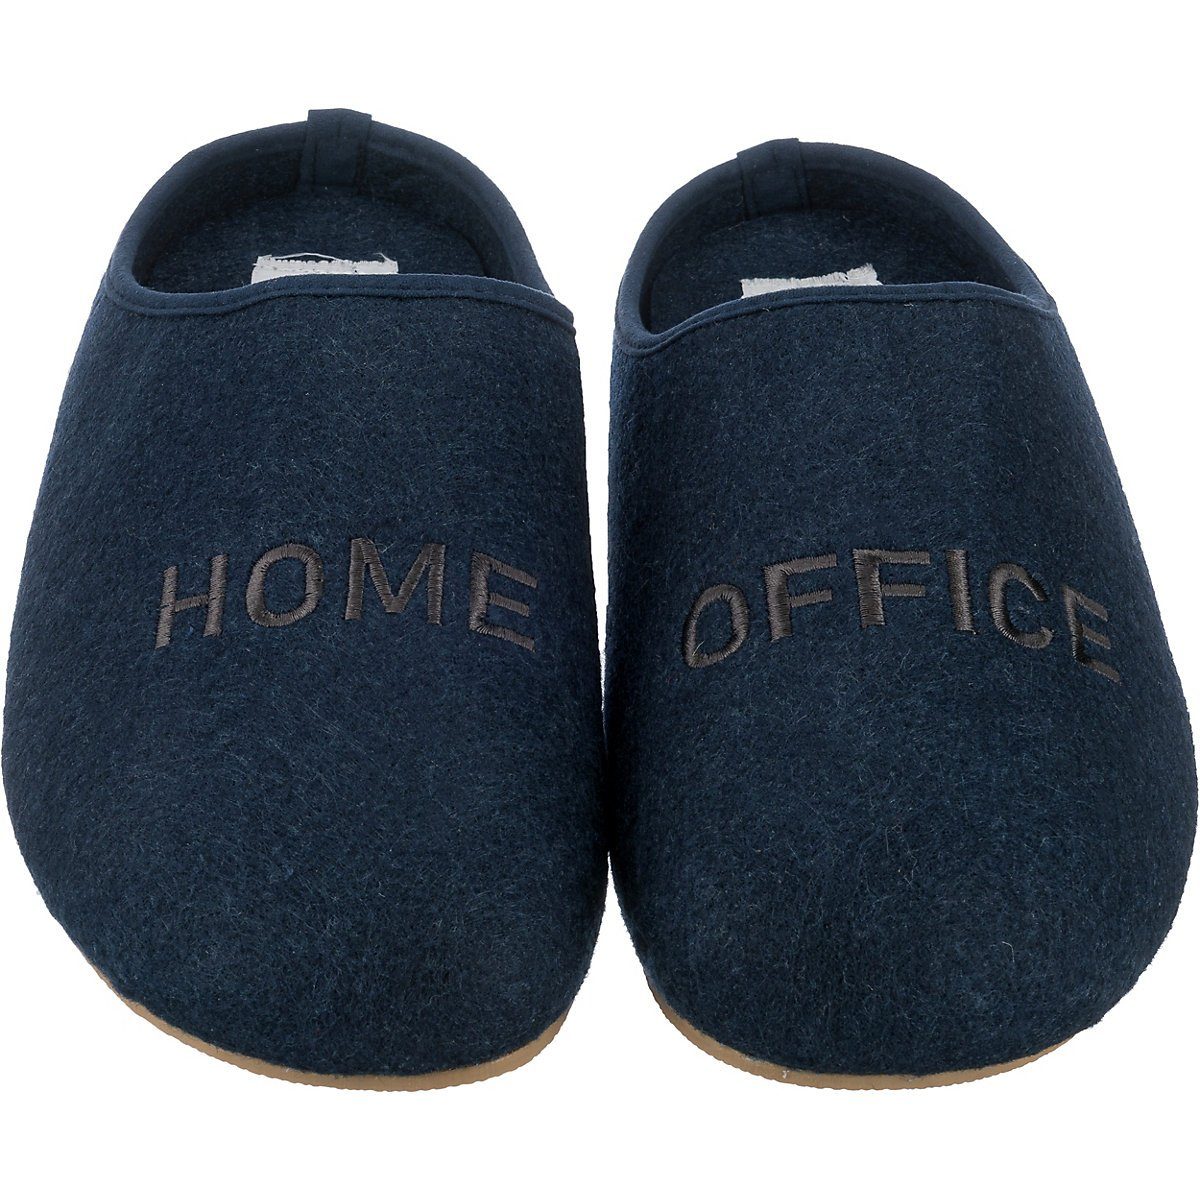 Schuhe Hausschuhe Freyling Comfort Home Office Slipper Pantoffeln Pantoffel